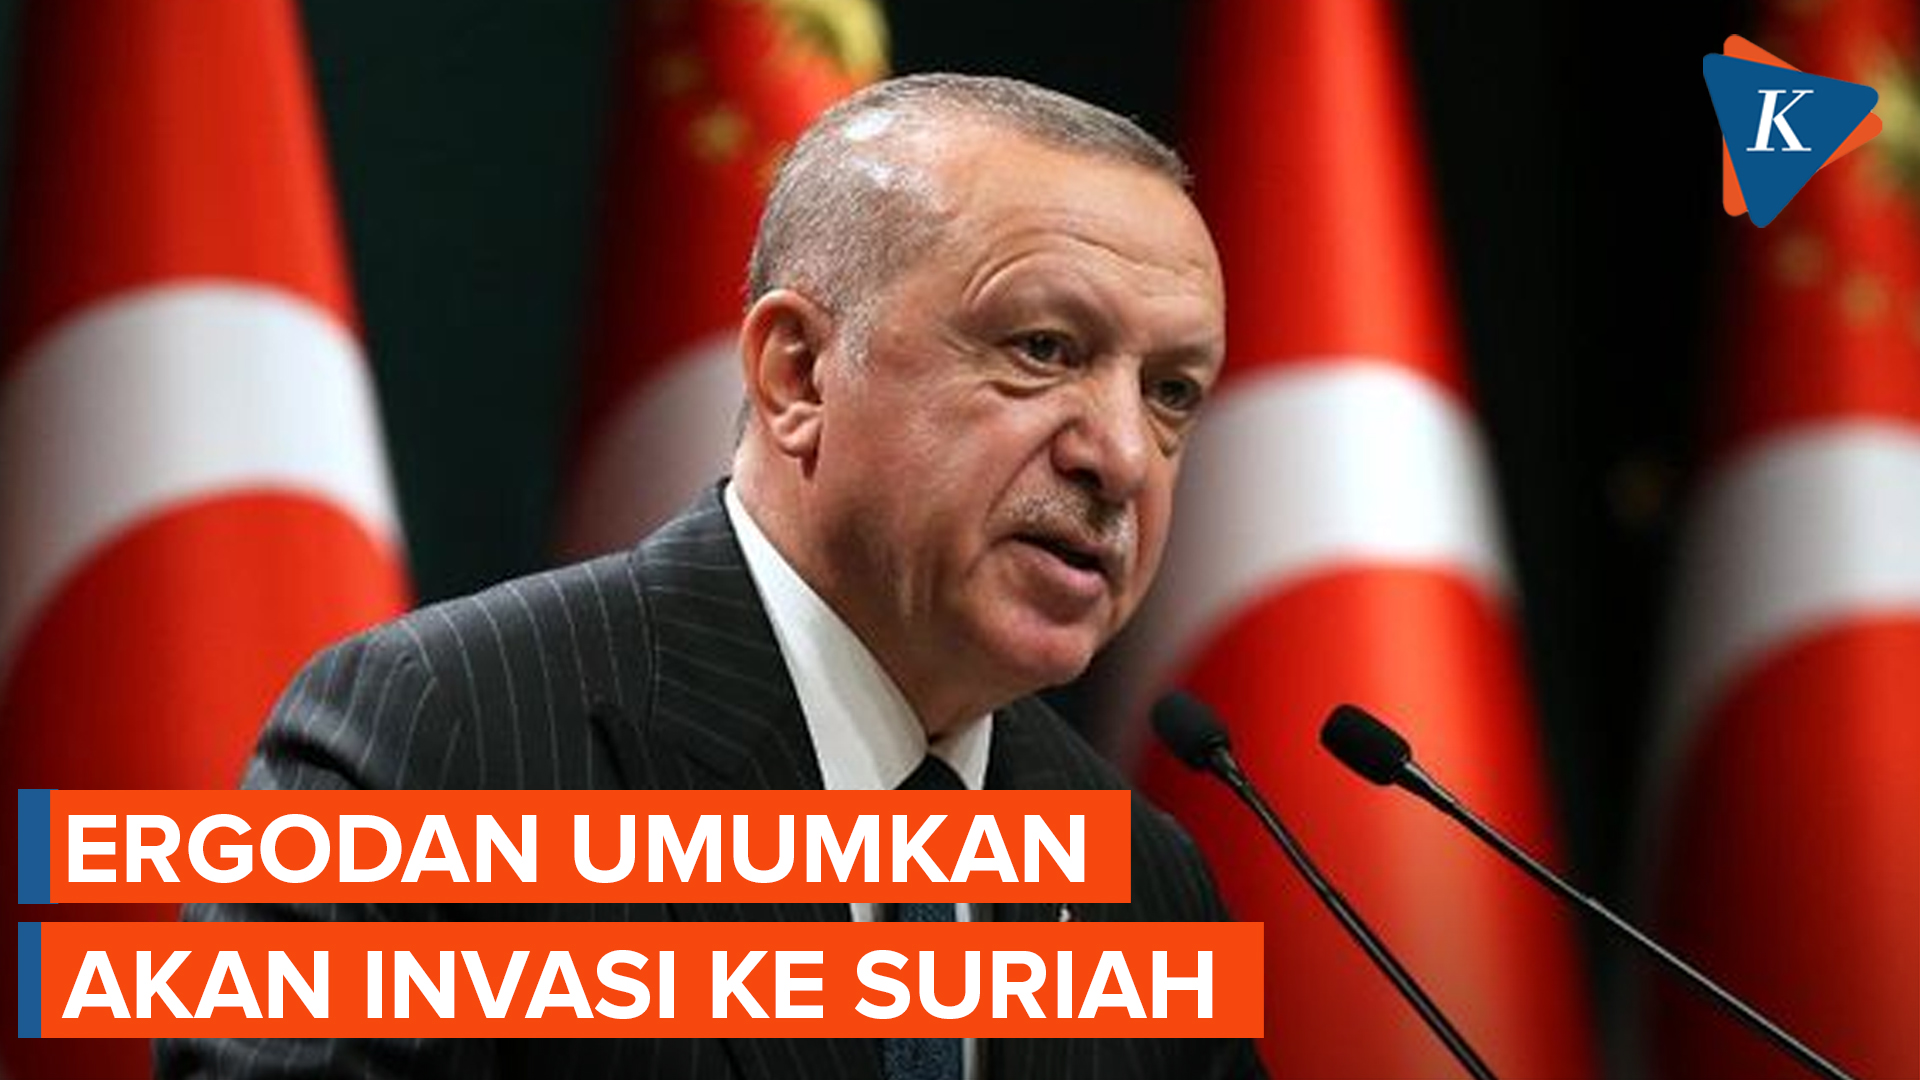 Erdogan Umumkan Turkiye Akan Bersiap Invasi ke Suriah, Menyasar Area Militan Kurdi